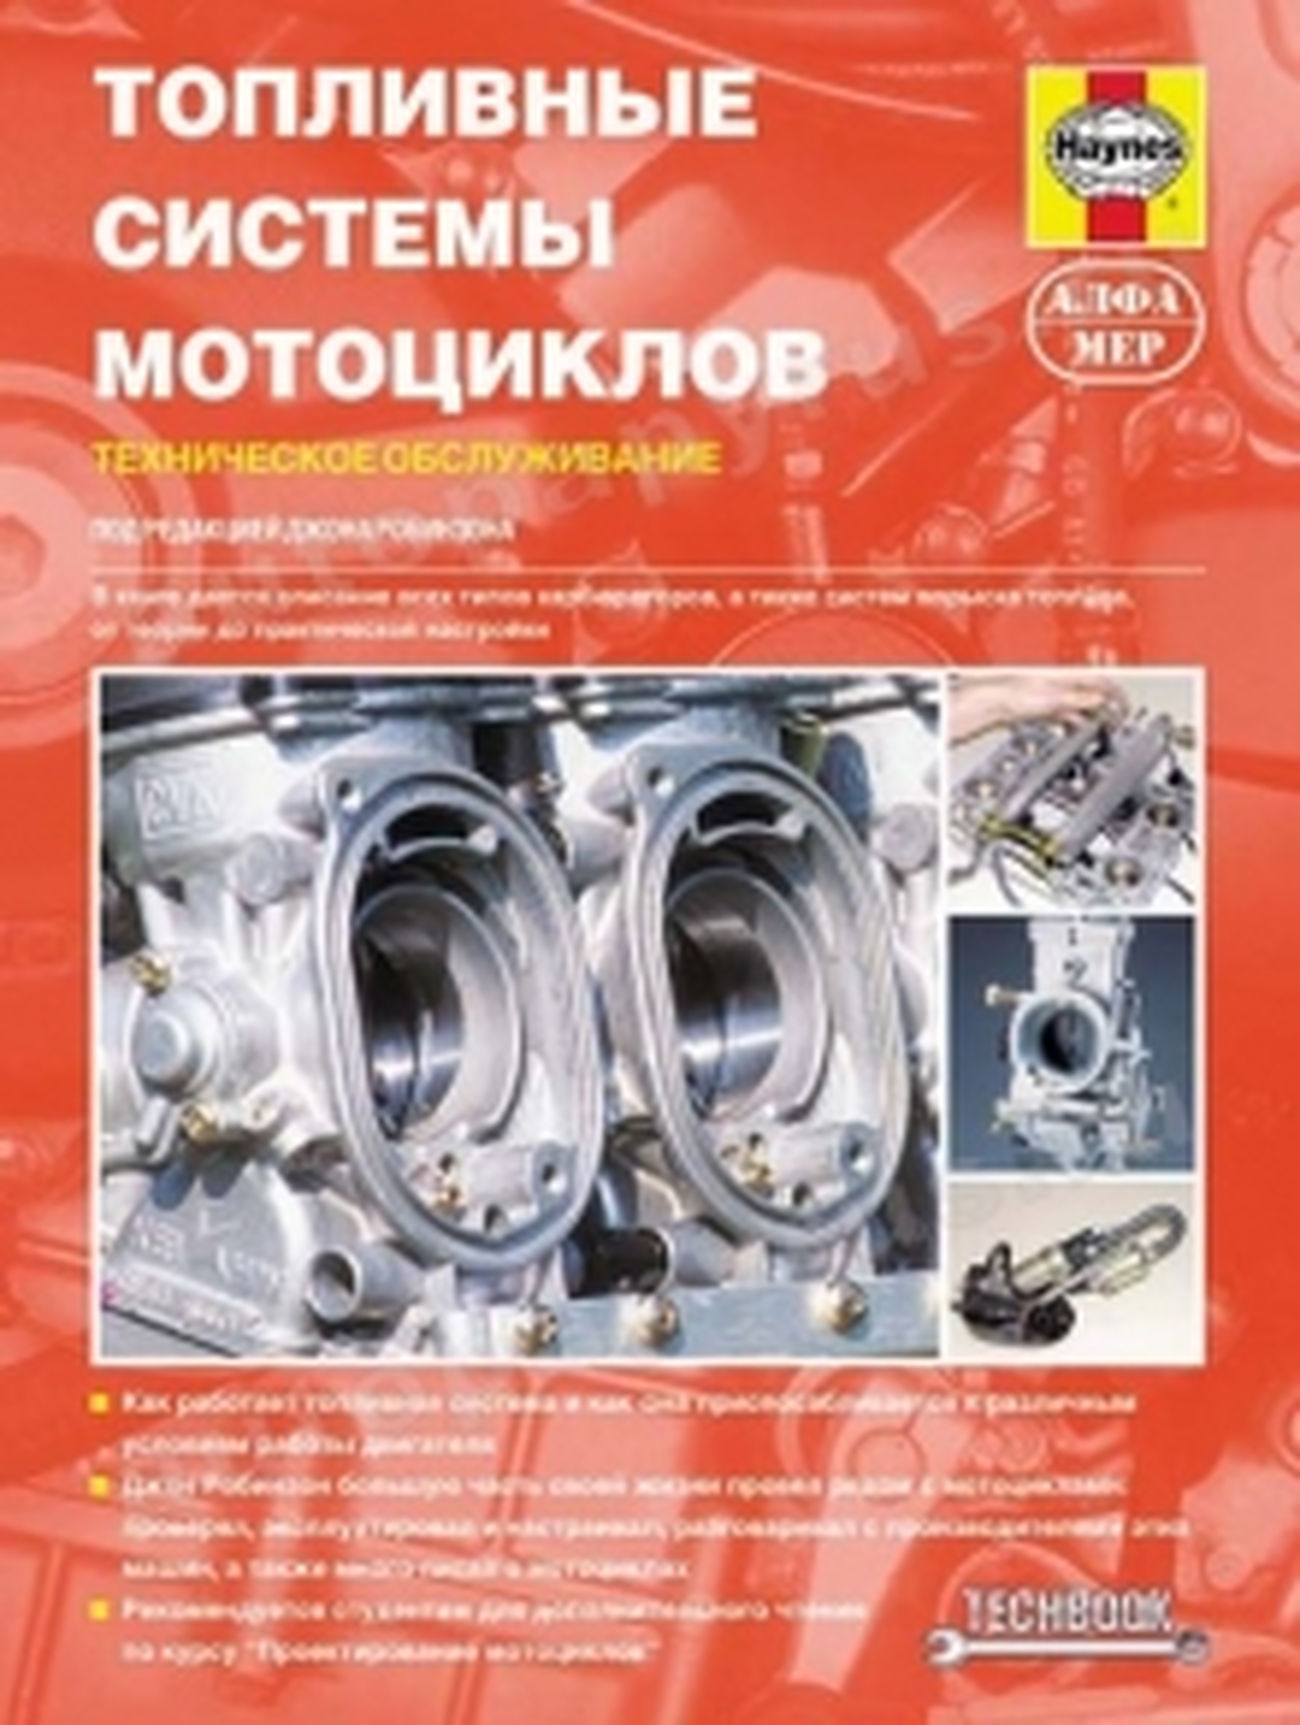 Книга: Топливные системы мотоциклов, то | Алфамер Паблишинг